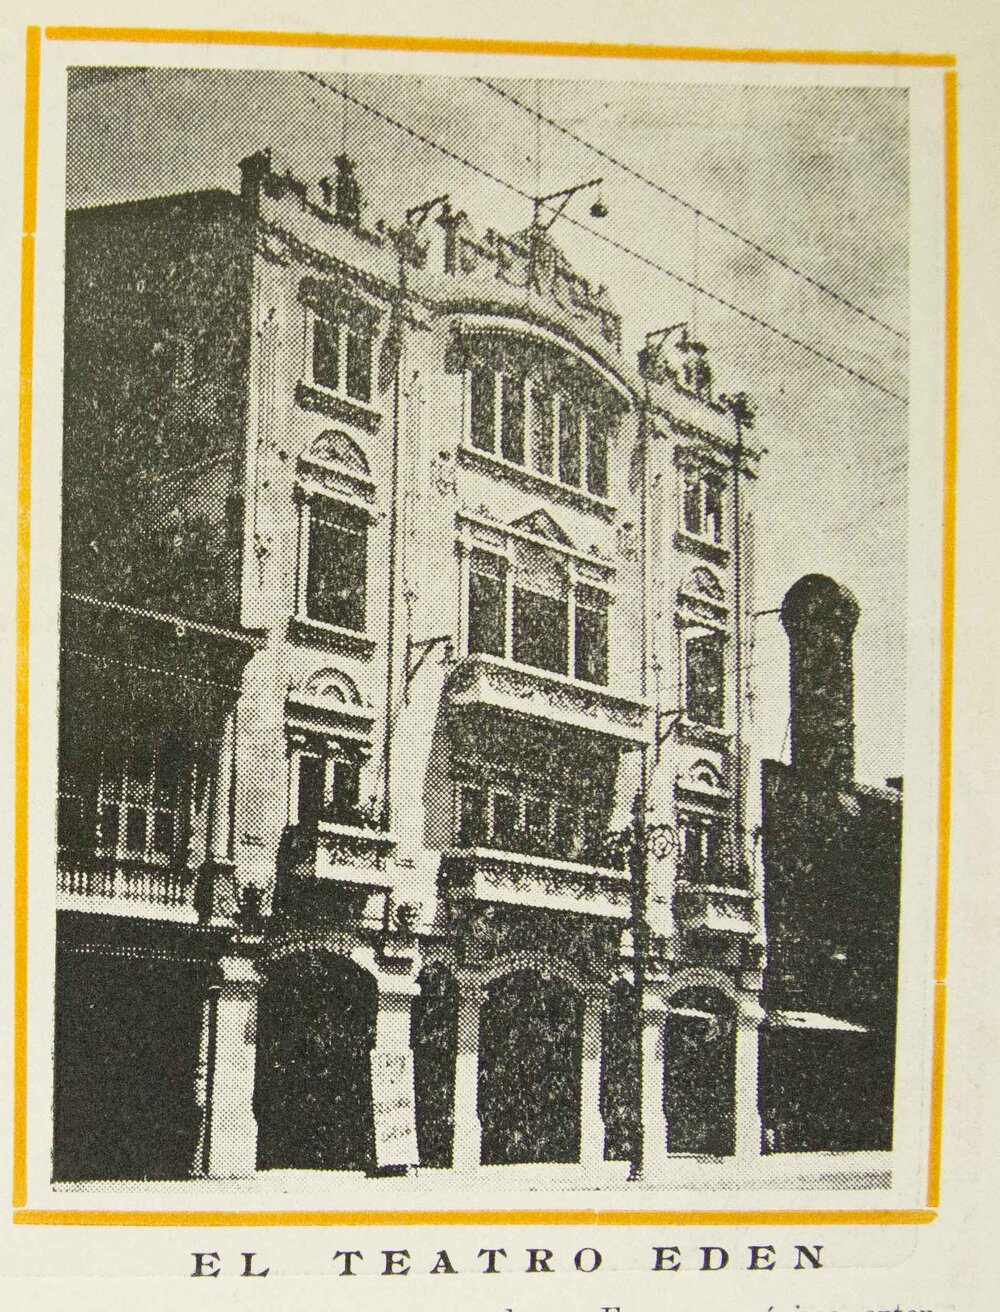 Revista Proyecciones del Edén, No. 14, 1922, Guayaquil